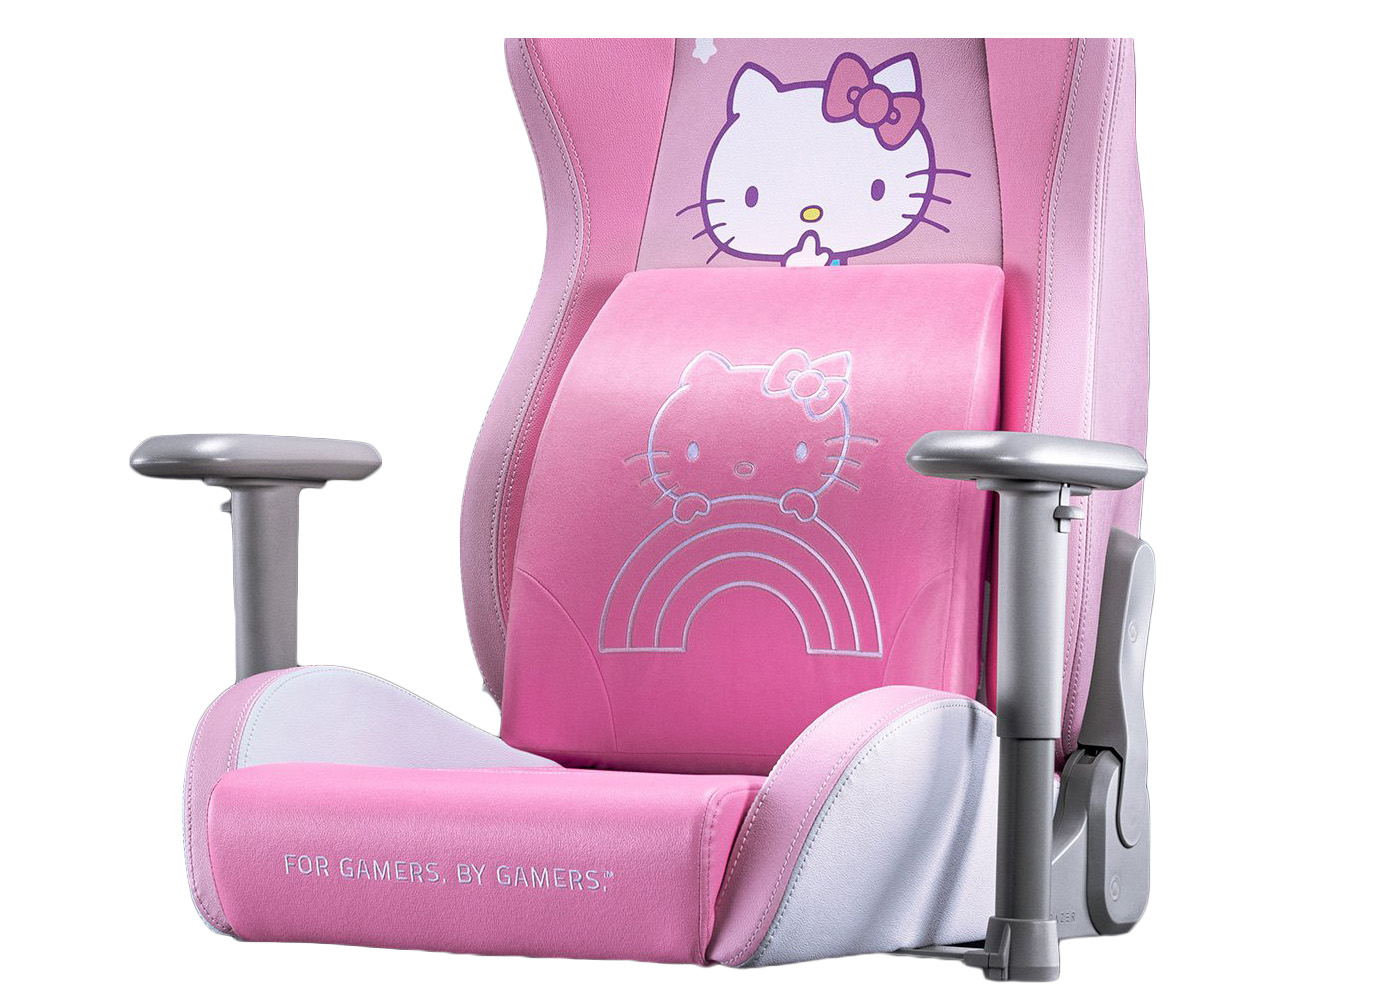 Razer Lumbar Cushion Hello Kitty and Friends Edition RC81-03830201-R3M1